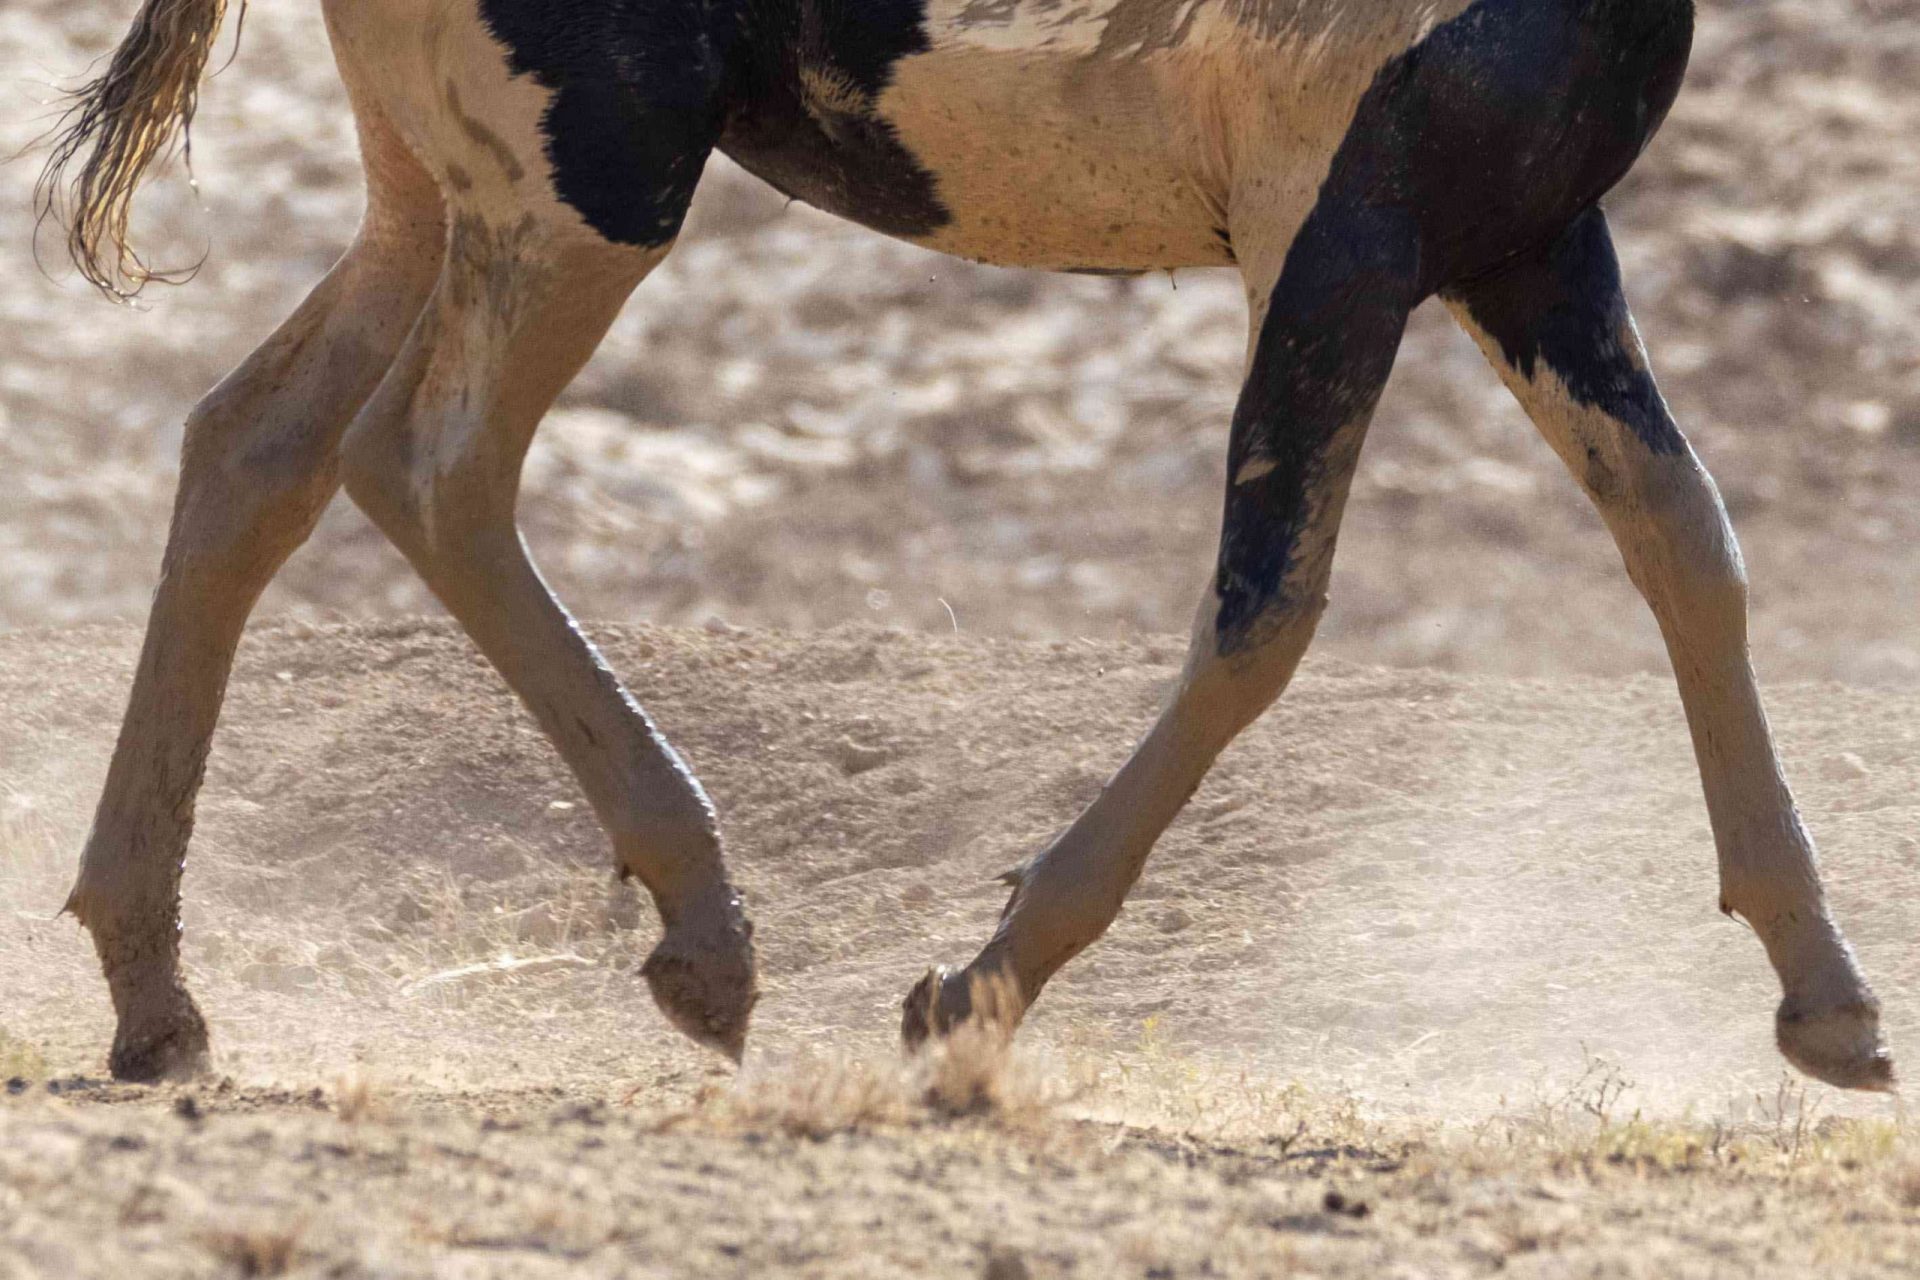 vista inferior de la cabeza de un caballo manchado corriendo en un terreno polvoriento